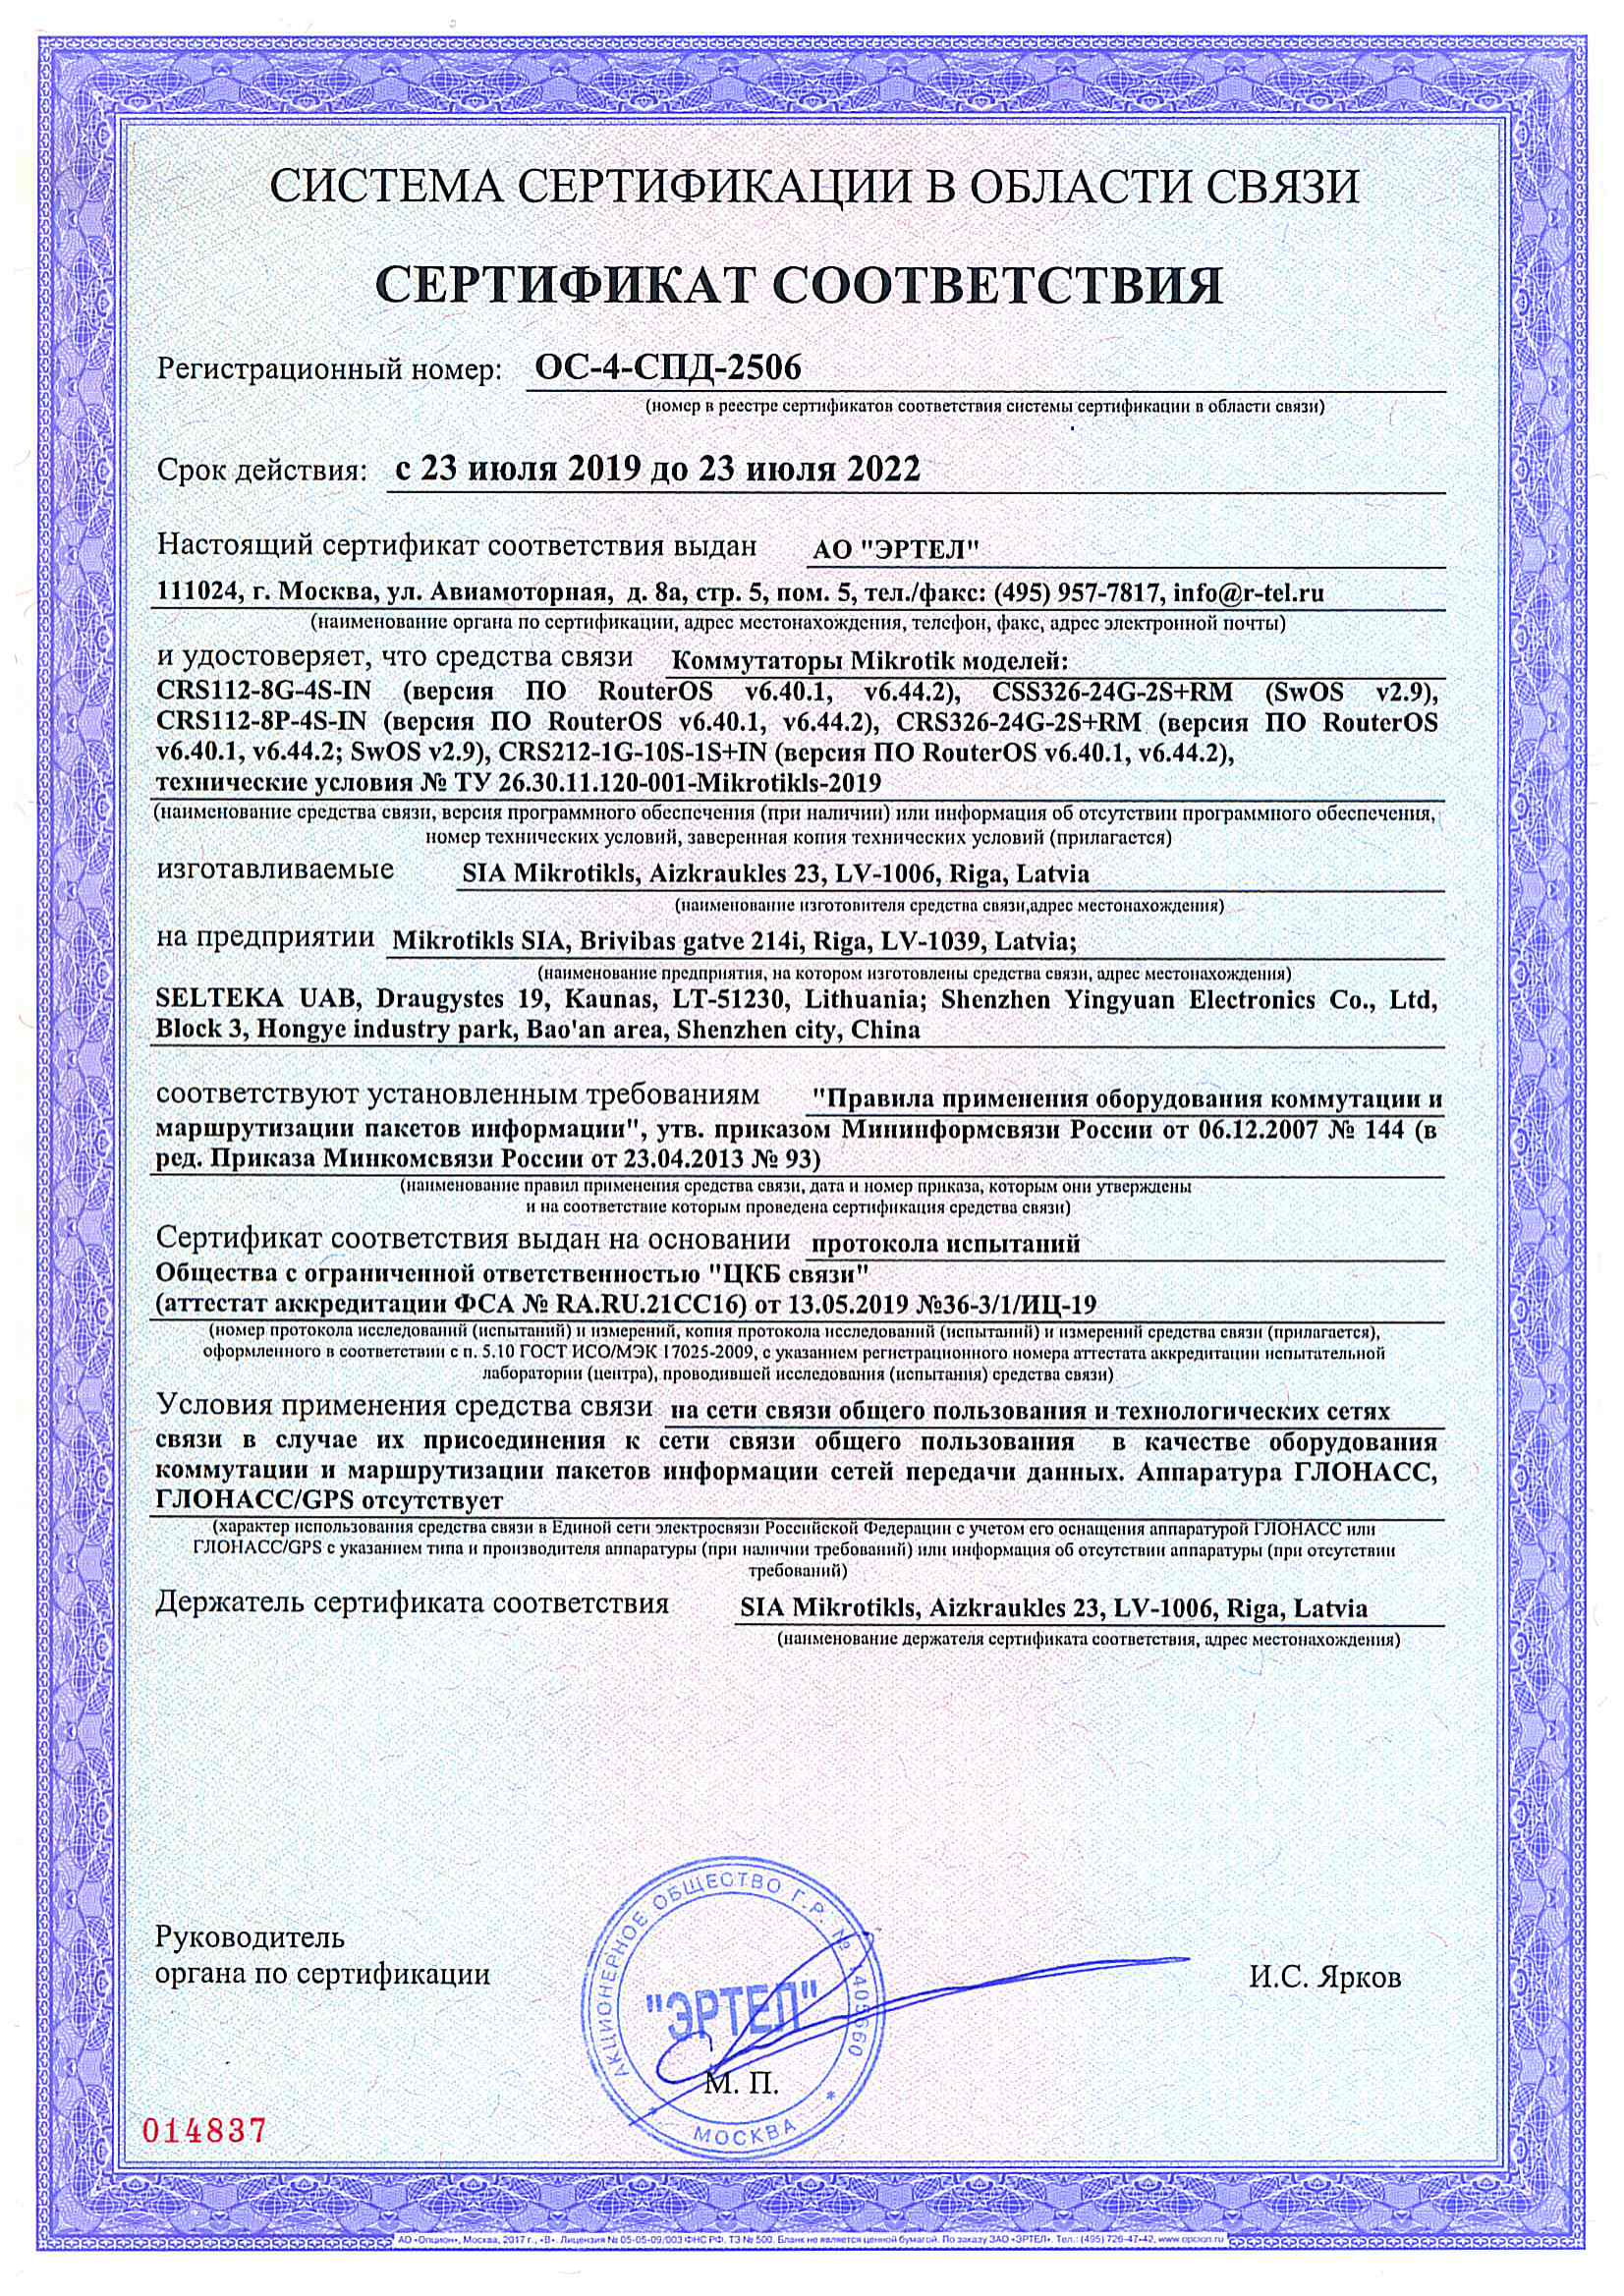 Сертификат соответствия в области связи ОС-4-СПД-2506